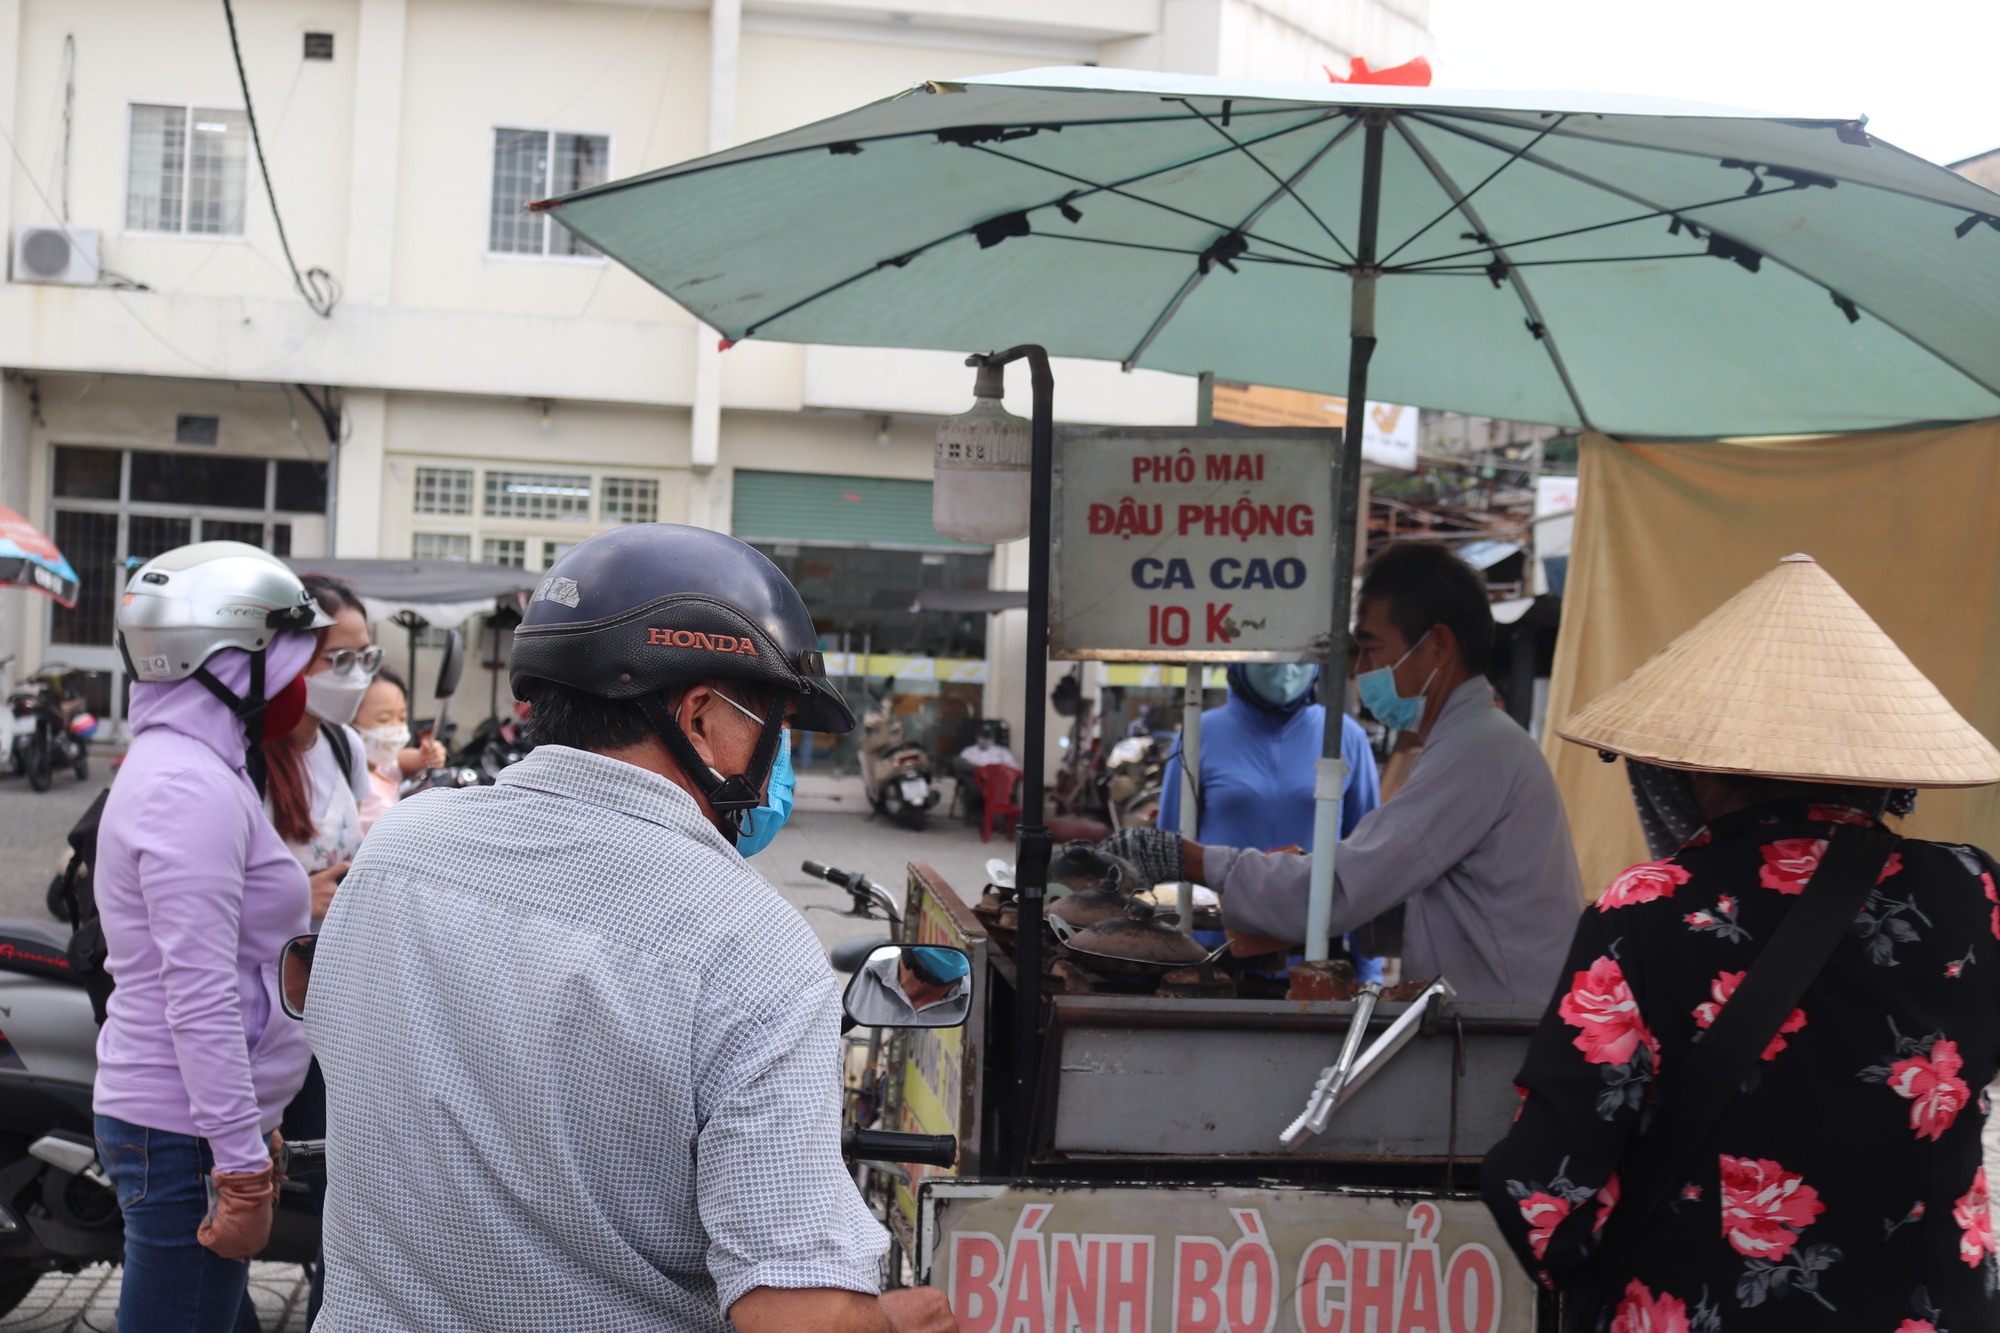 Bánh bò chảo giá 5.000 đồng khiến nhiều khách Sài Gòn xếp hàng chờ mua - Ảnh 6.